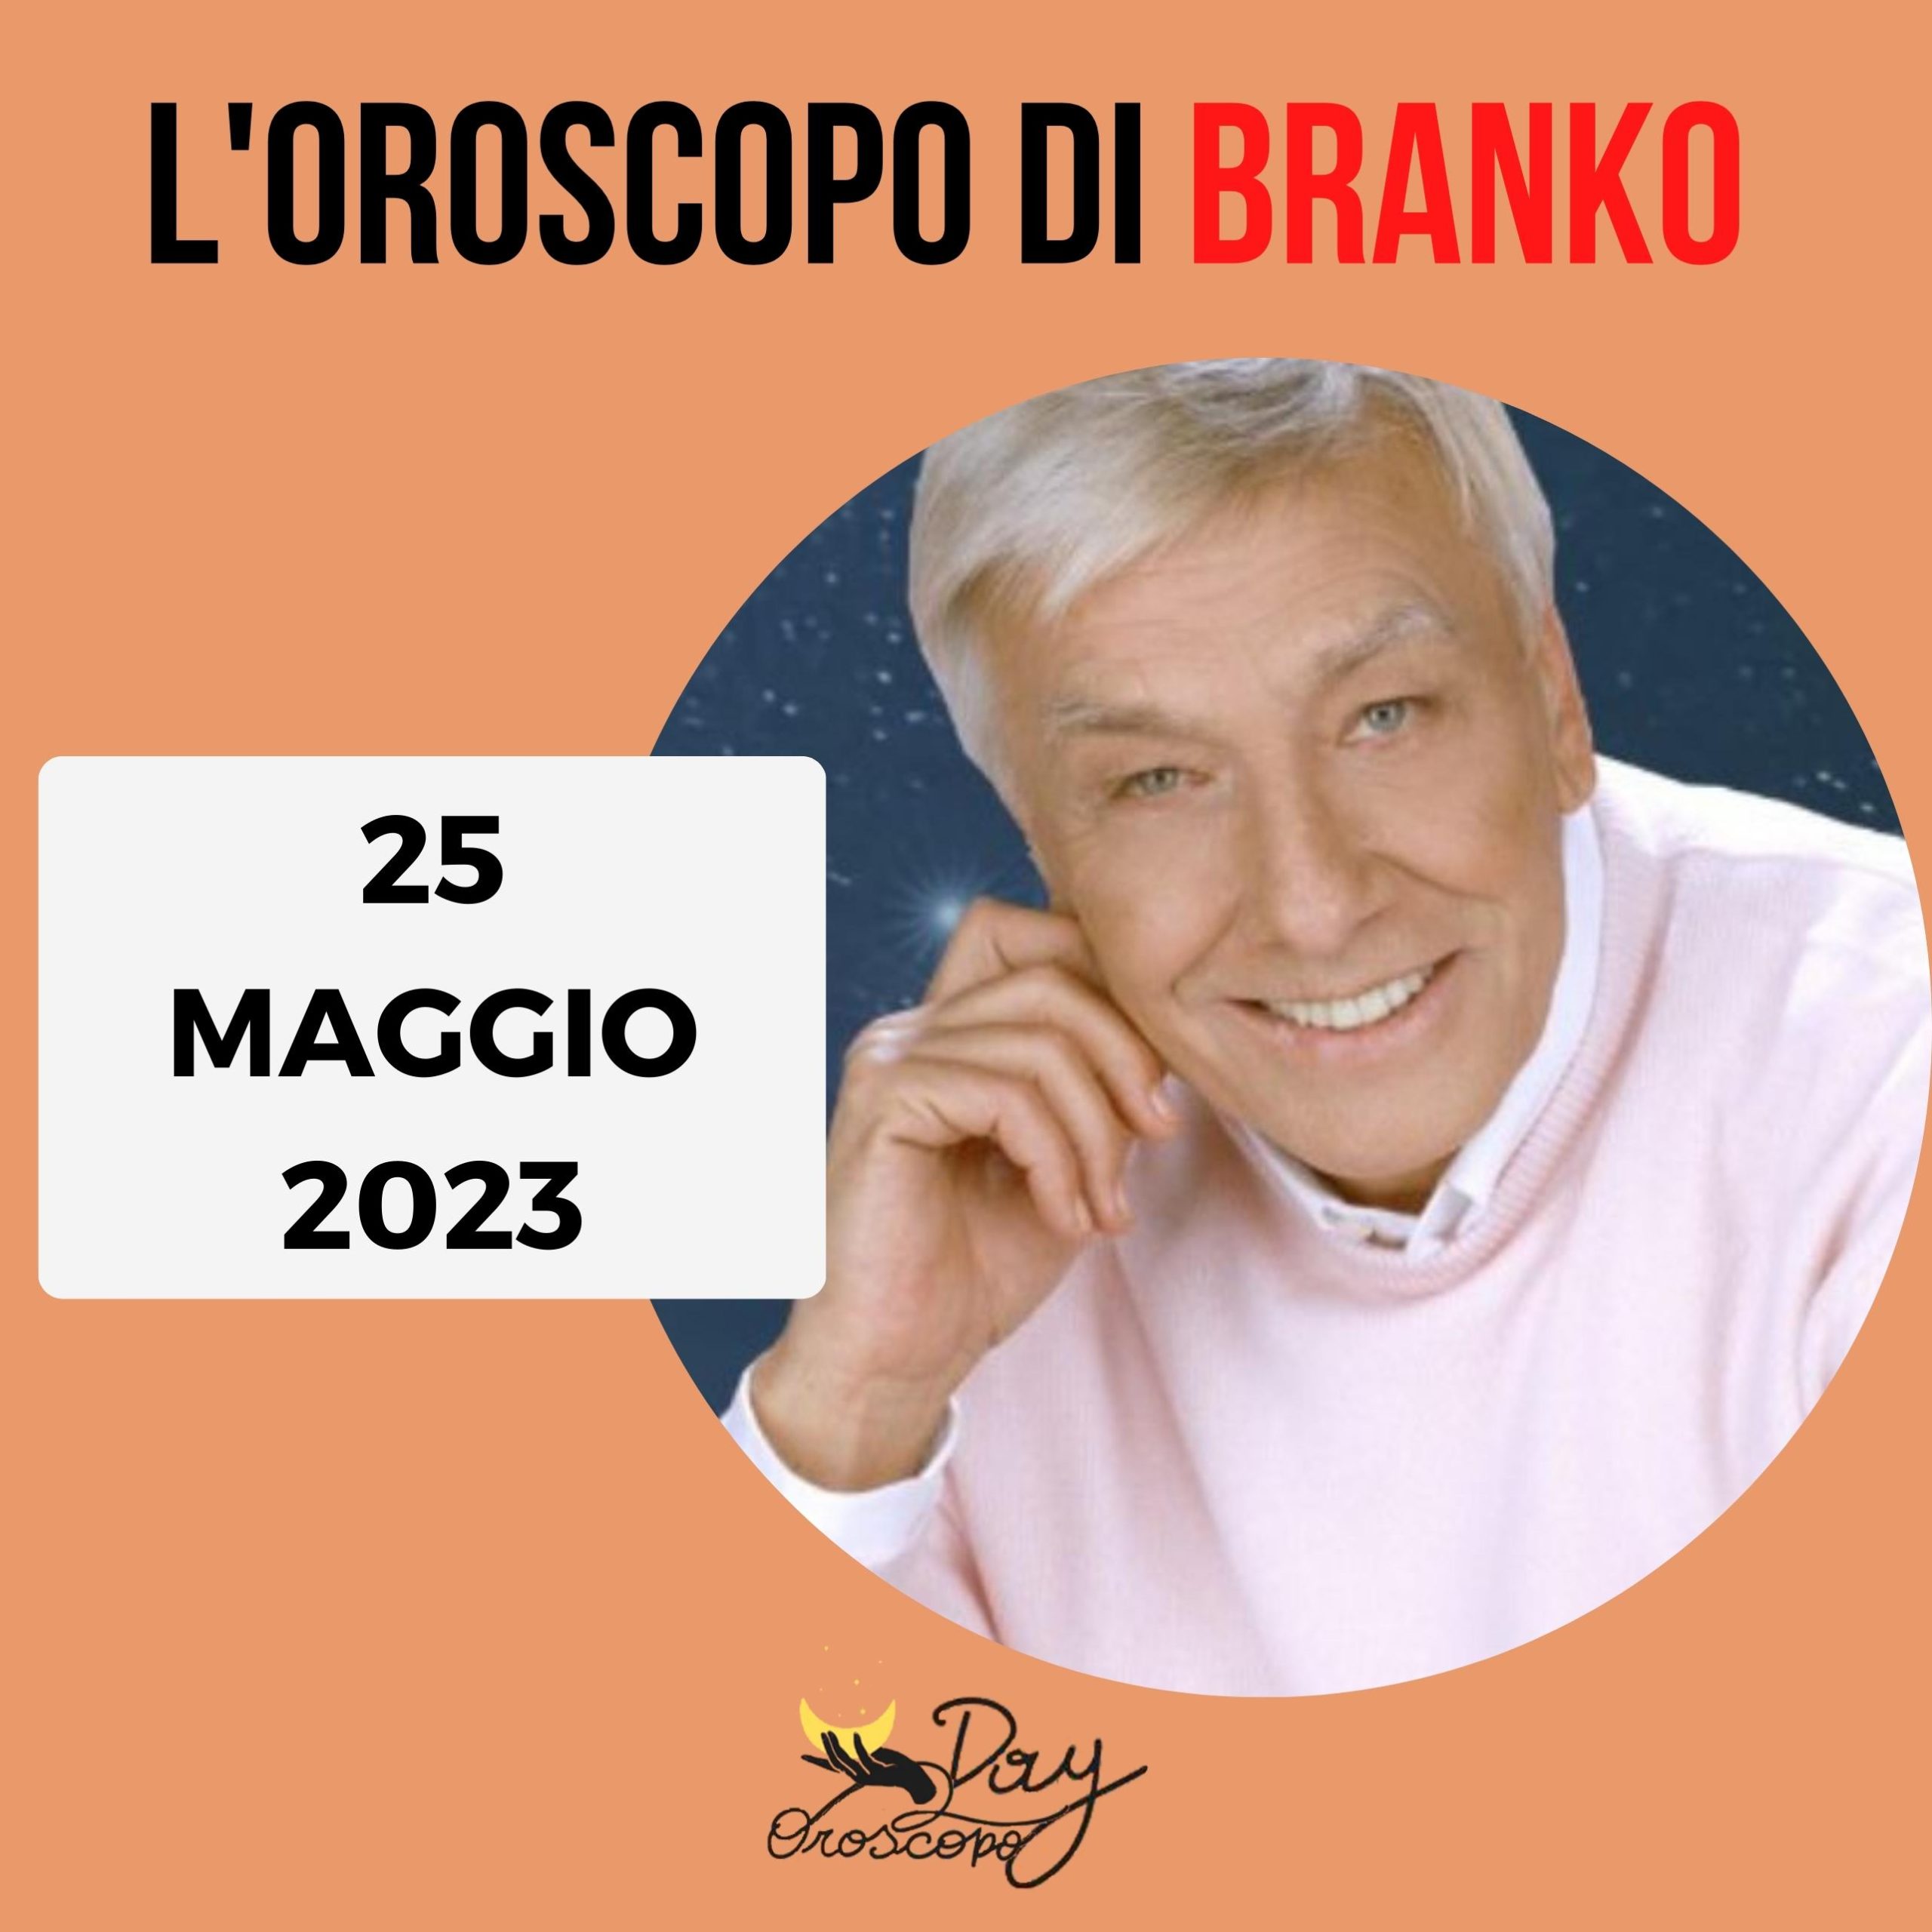 Oroscopo oggi domani Branko 25 maggio 2023